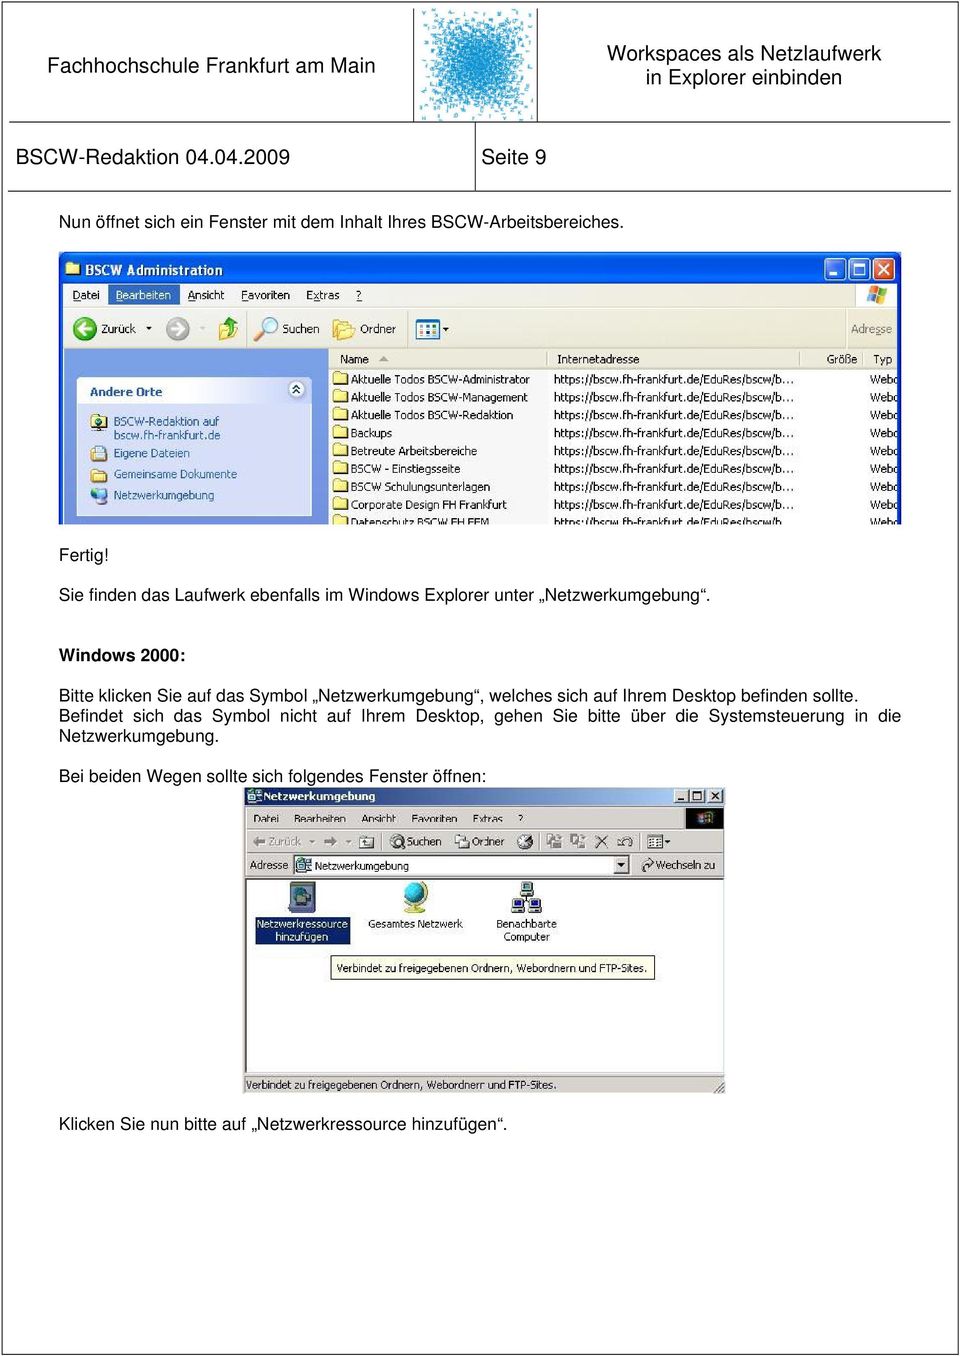 Windows 2000: Bitte klicken Sie auf das Symbol Netzwerkumgebung, welches sich auf Ihrem Desktop befinden sollte.